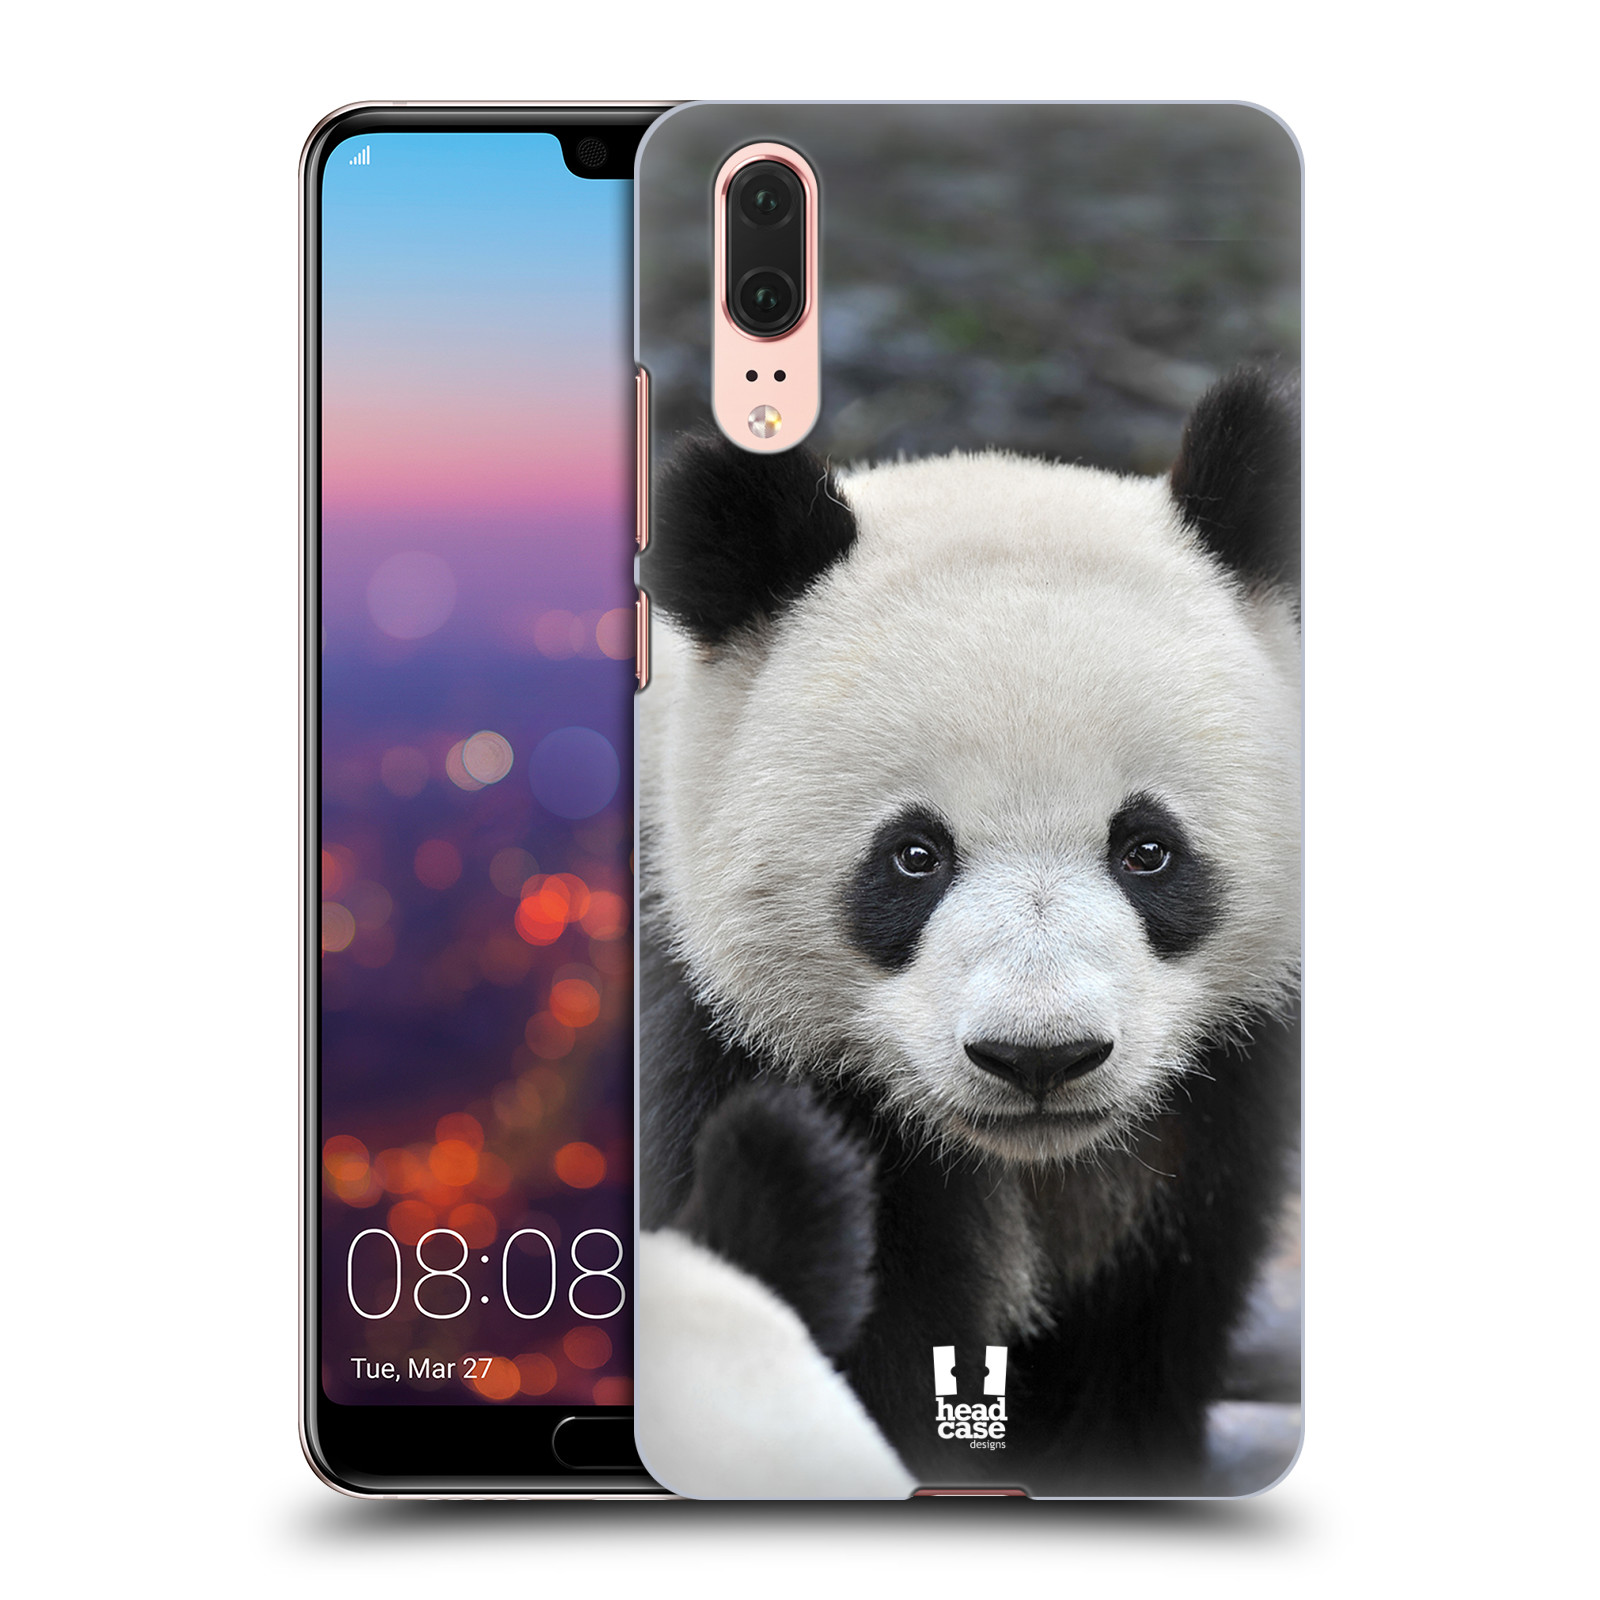 Zadní obal pro mobil Huawei P20 - HEAD CASE - Svět zvířat medvěd panda